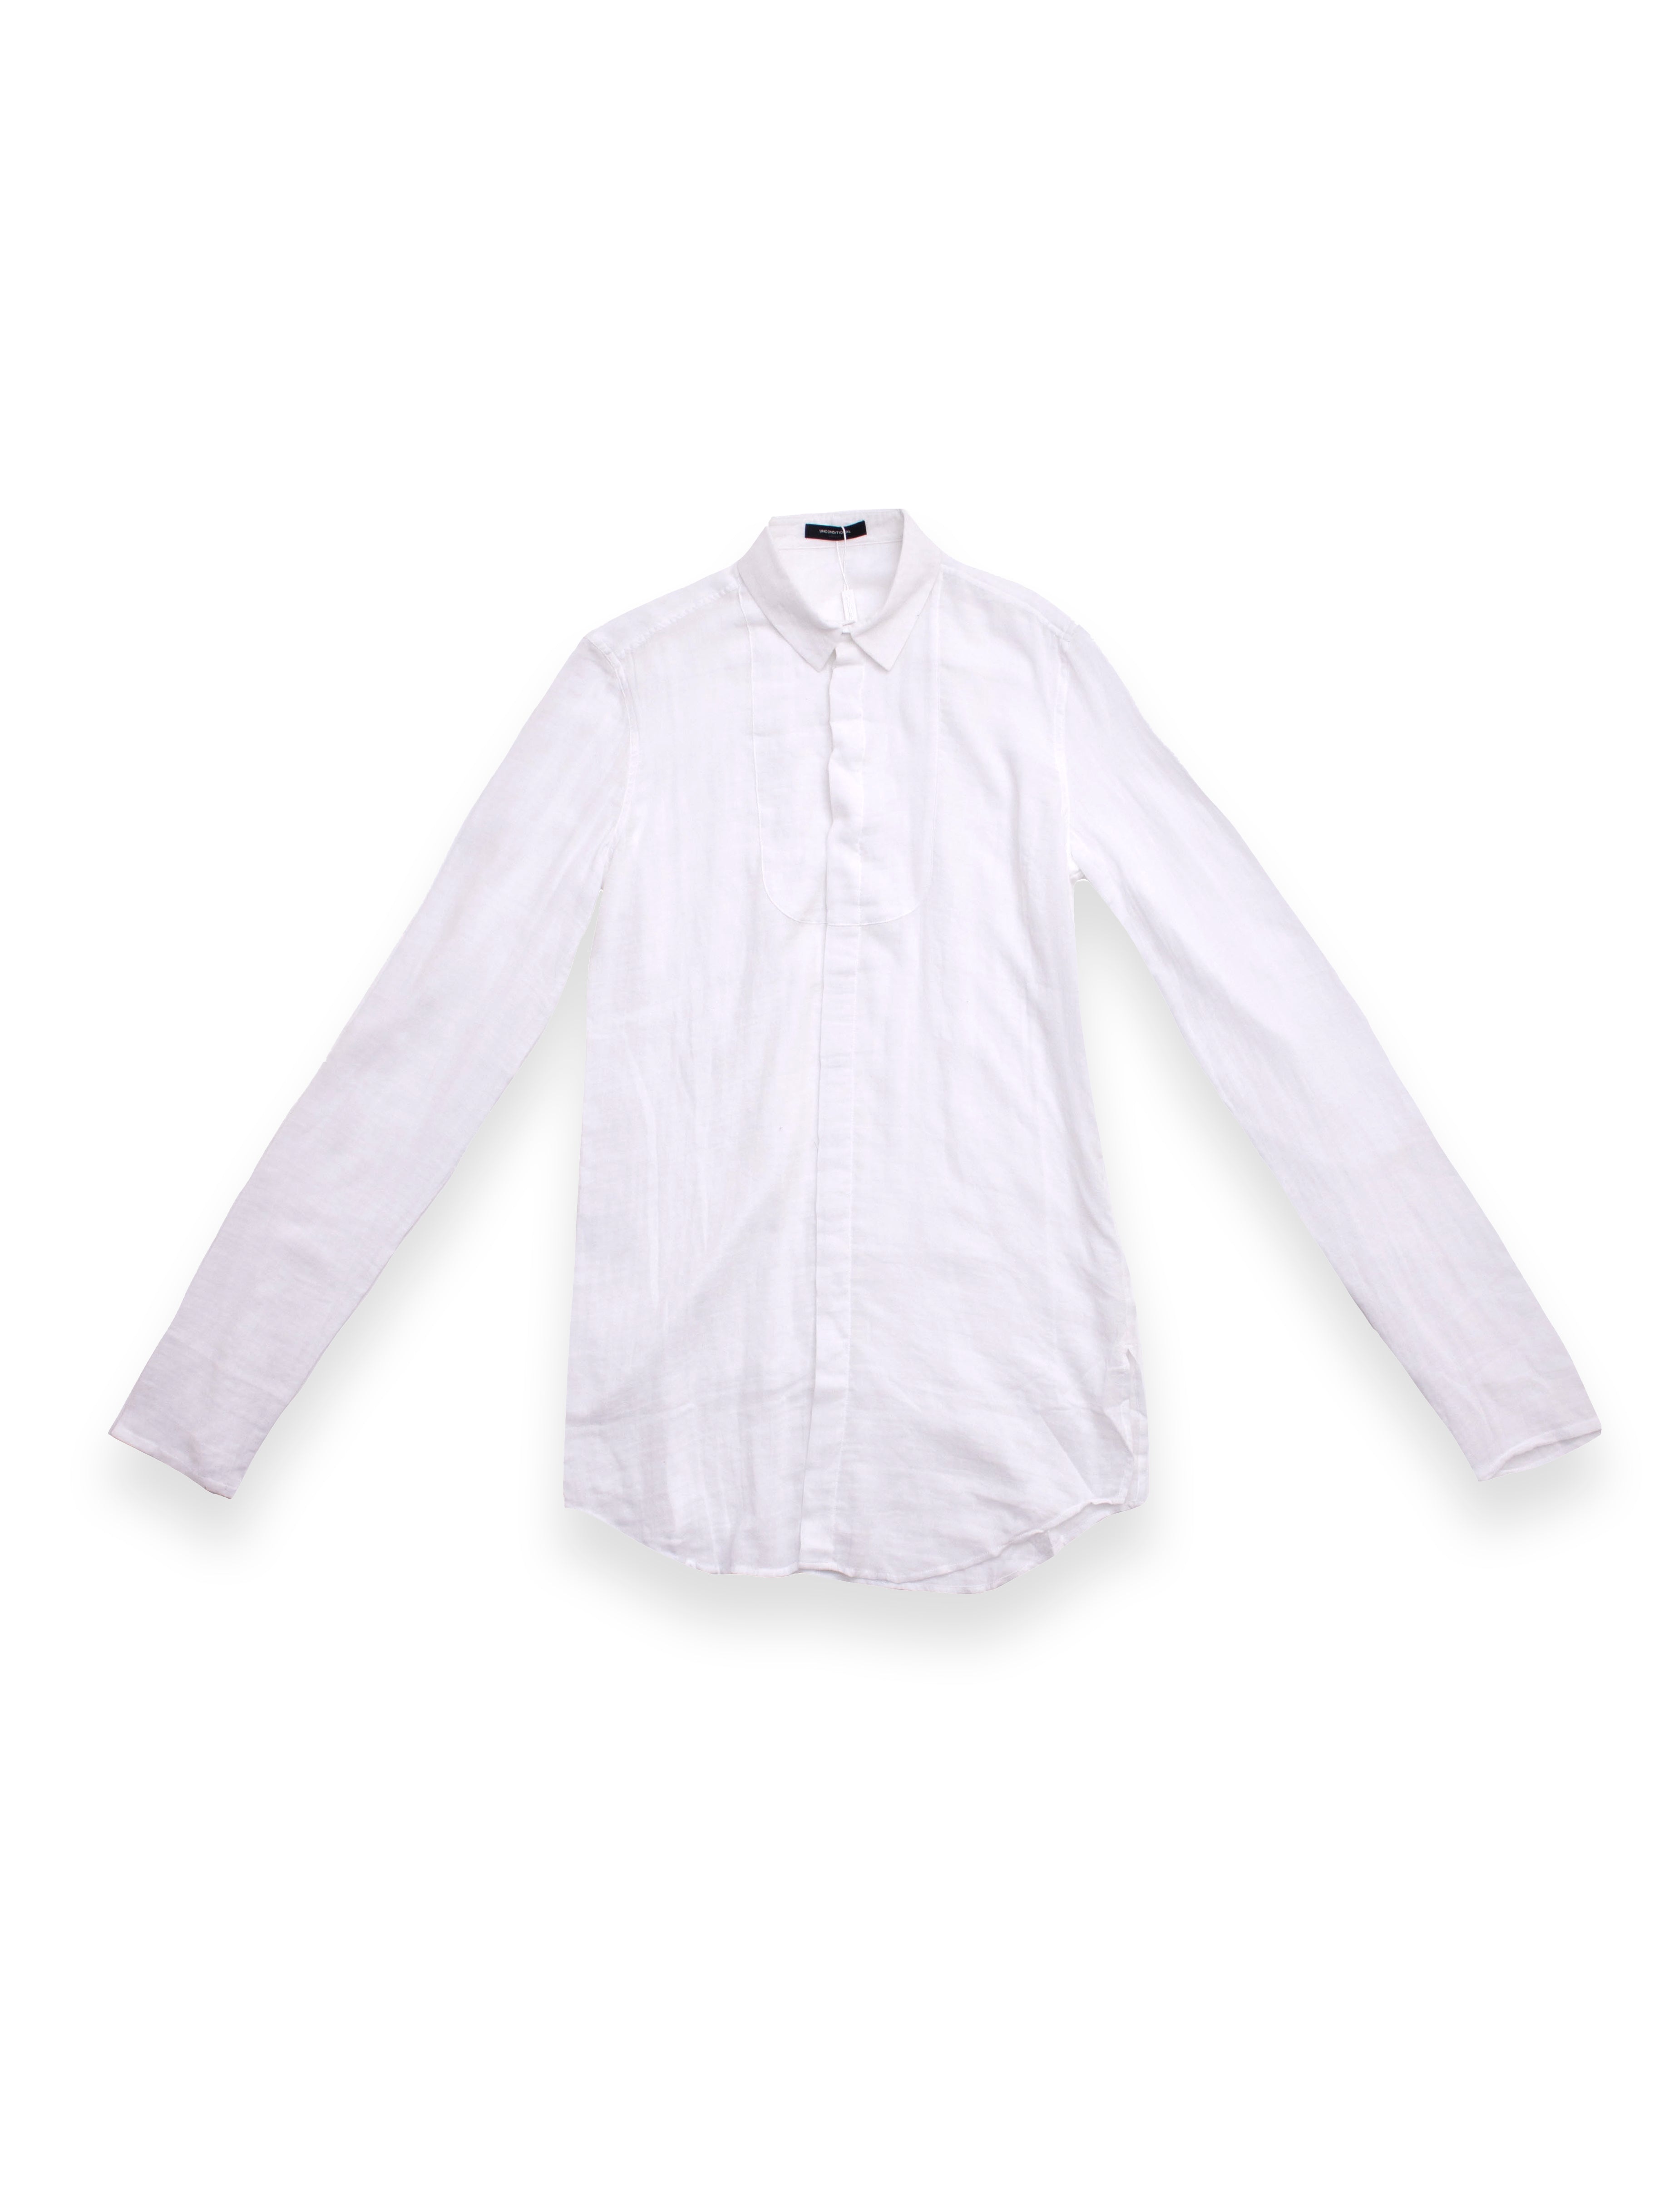 Light White Long Sleeve Shirt